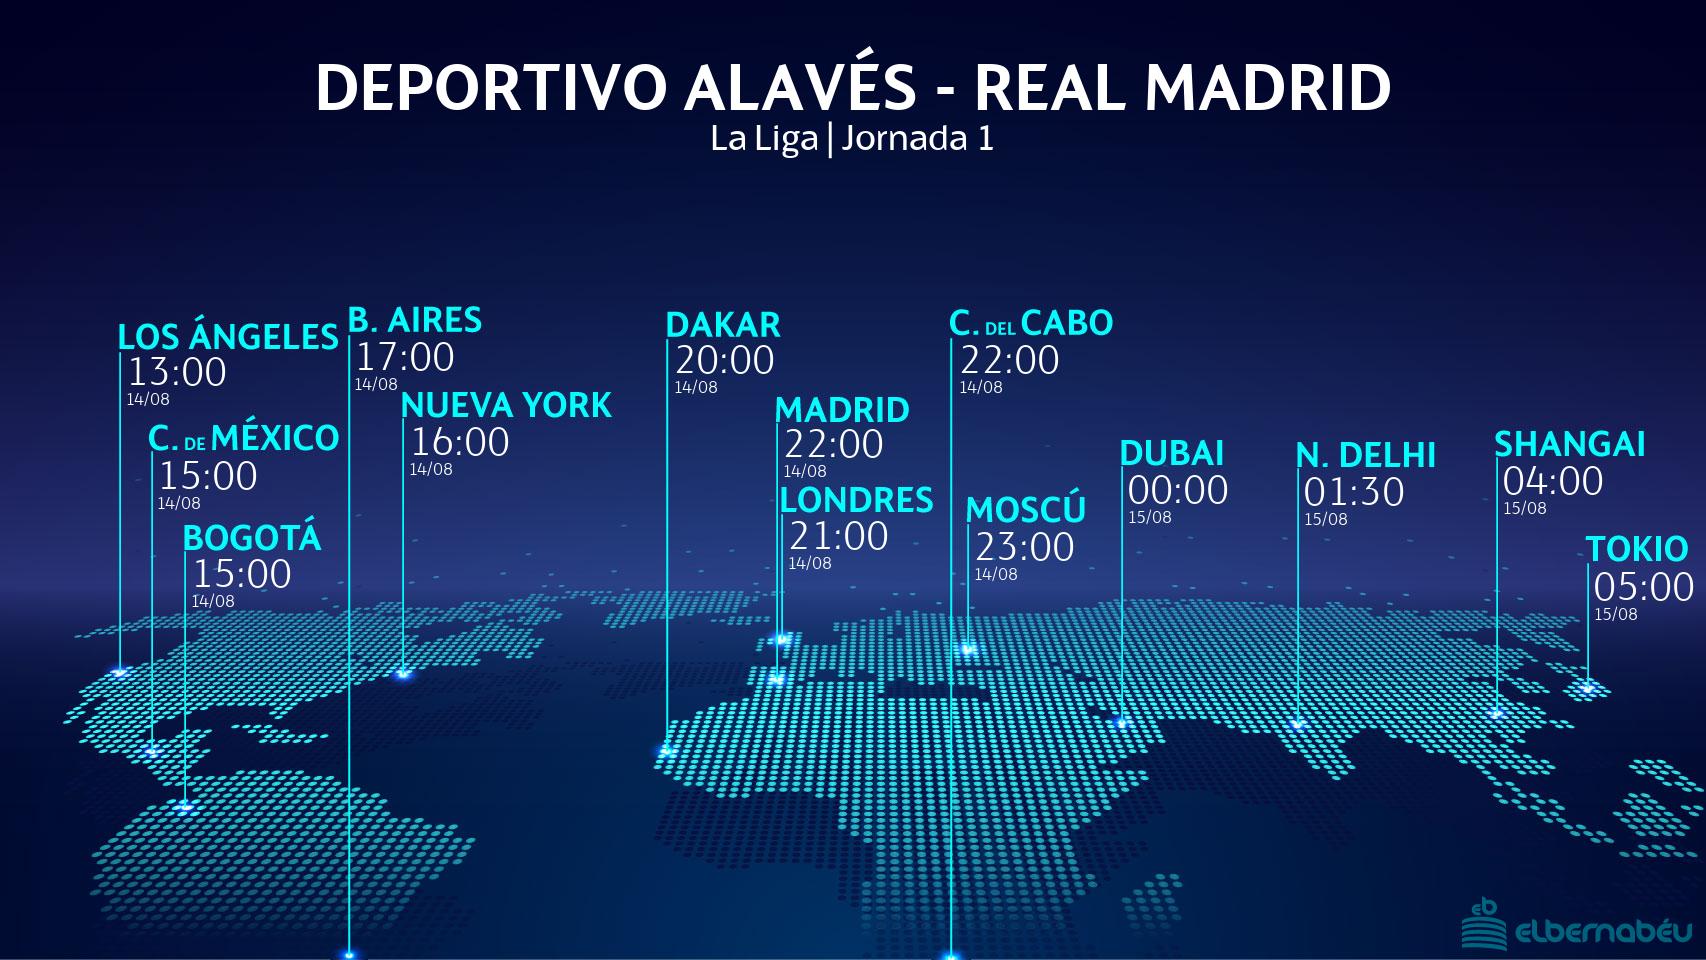 El horario internacional del Deportivo Alavés - Real Madrid